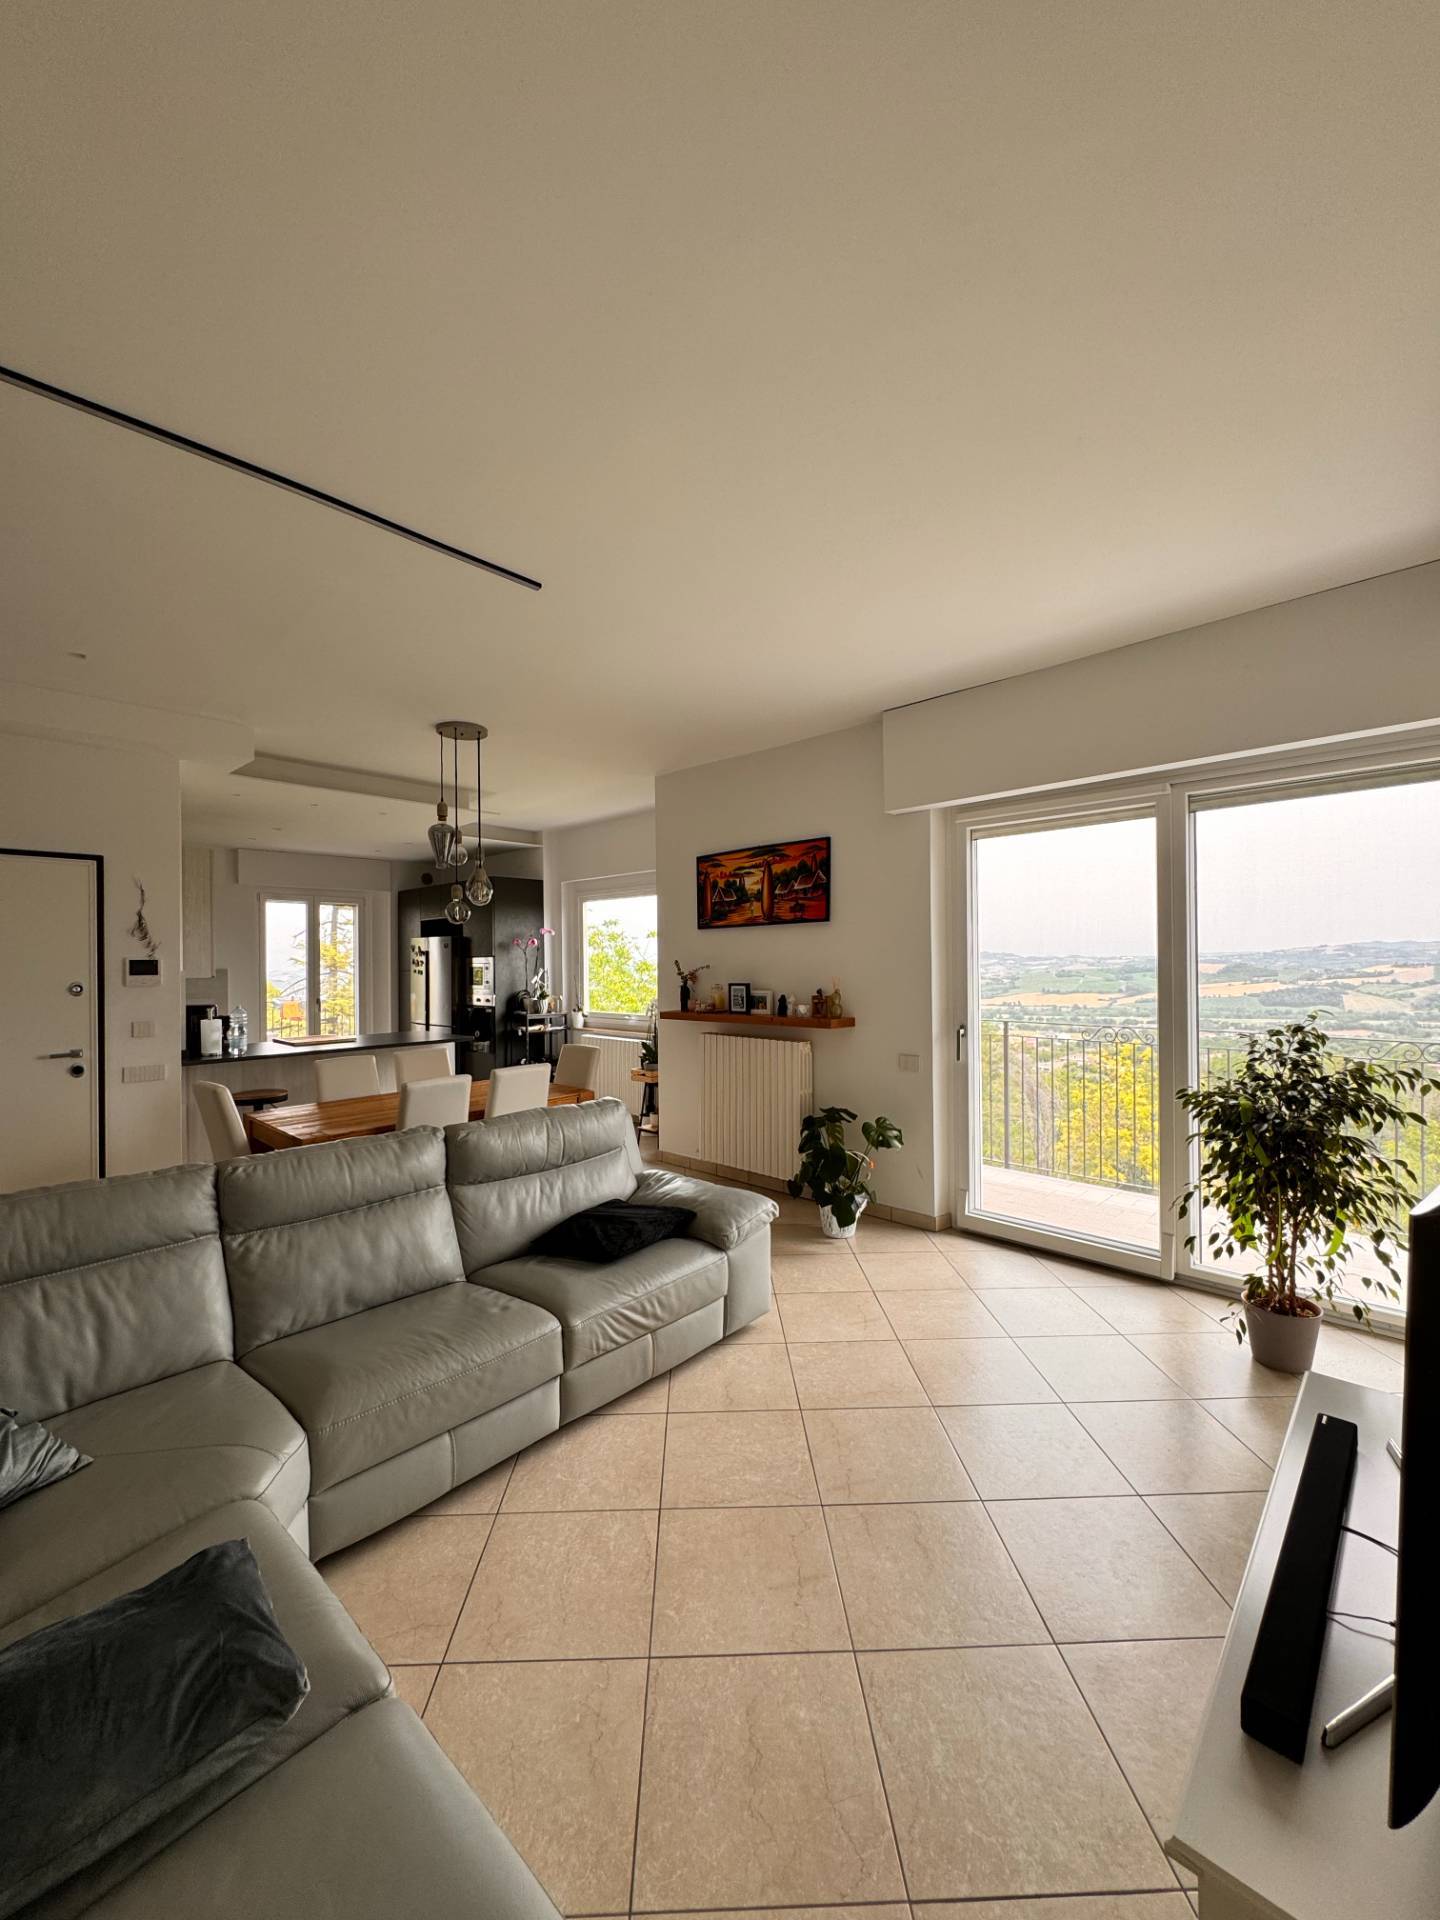 Foto - Appartamento In Vendita Montegiorgio (fm)